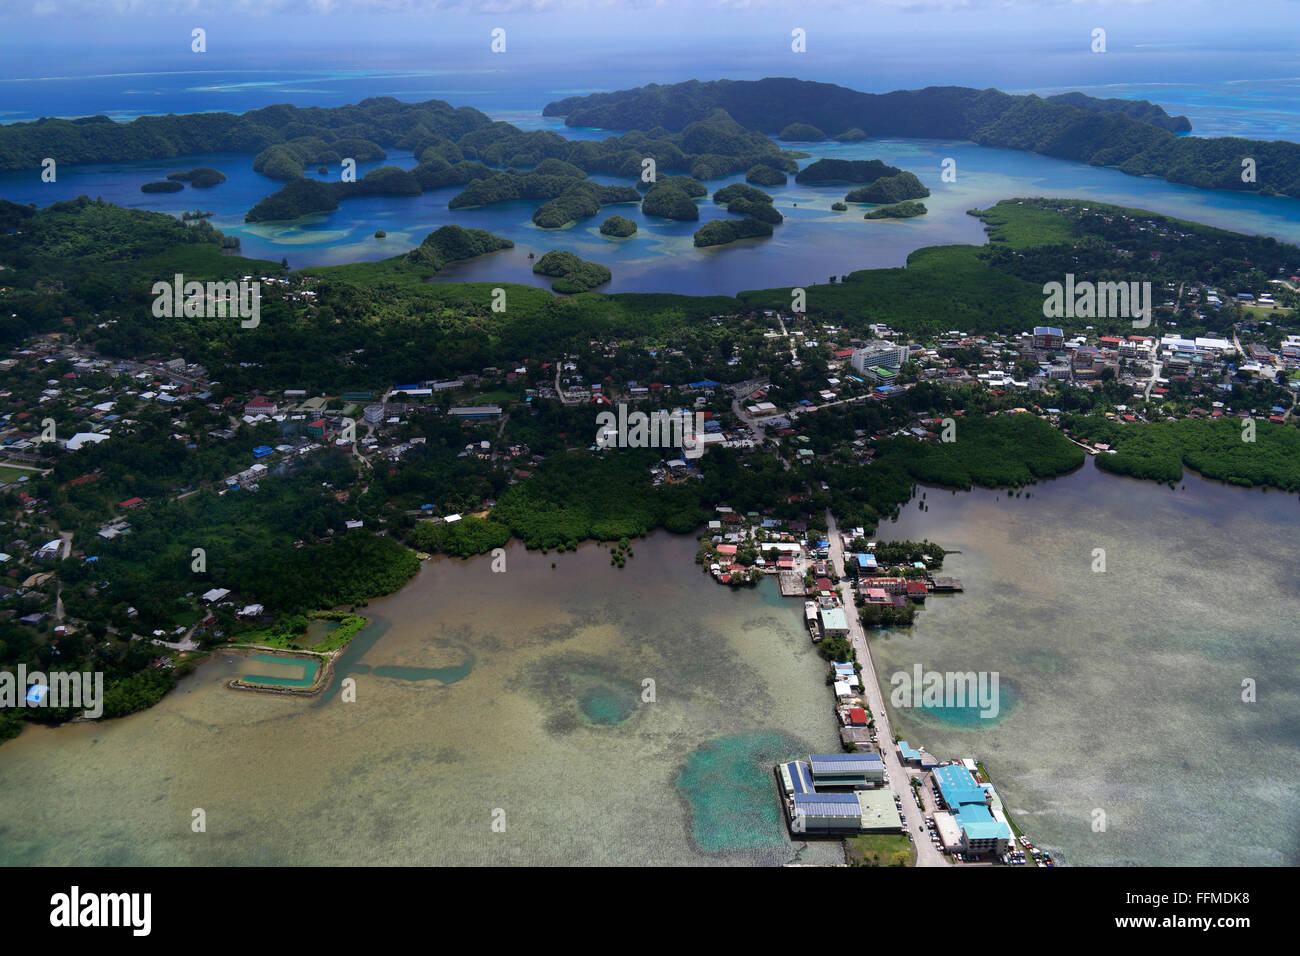 Veduta aerea di Koror, città di Palau, Micronesia, Oceania. Isola dell'Oceano Pacifico vista dal cielo in aereo. Aereo che vola sul mare, la natura, atollo Foto Stock